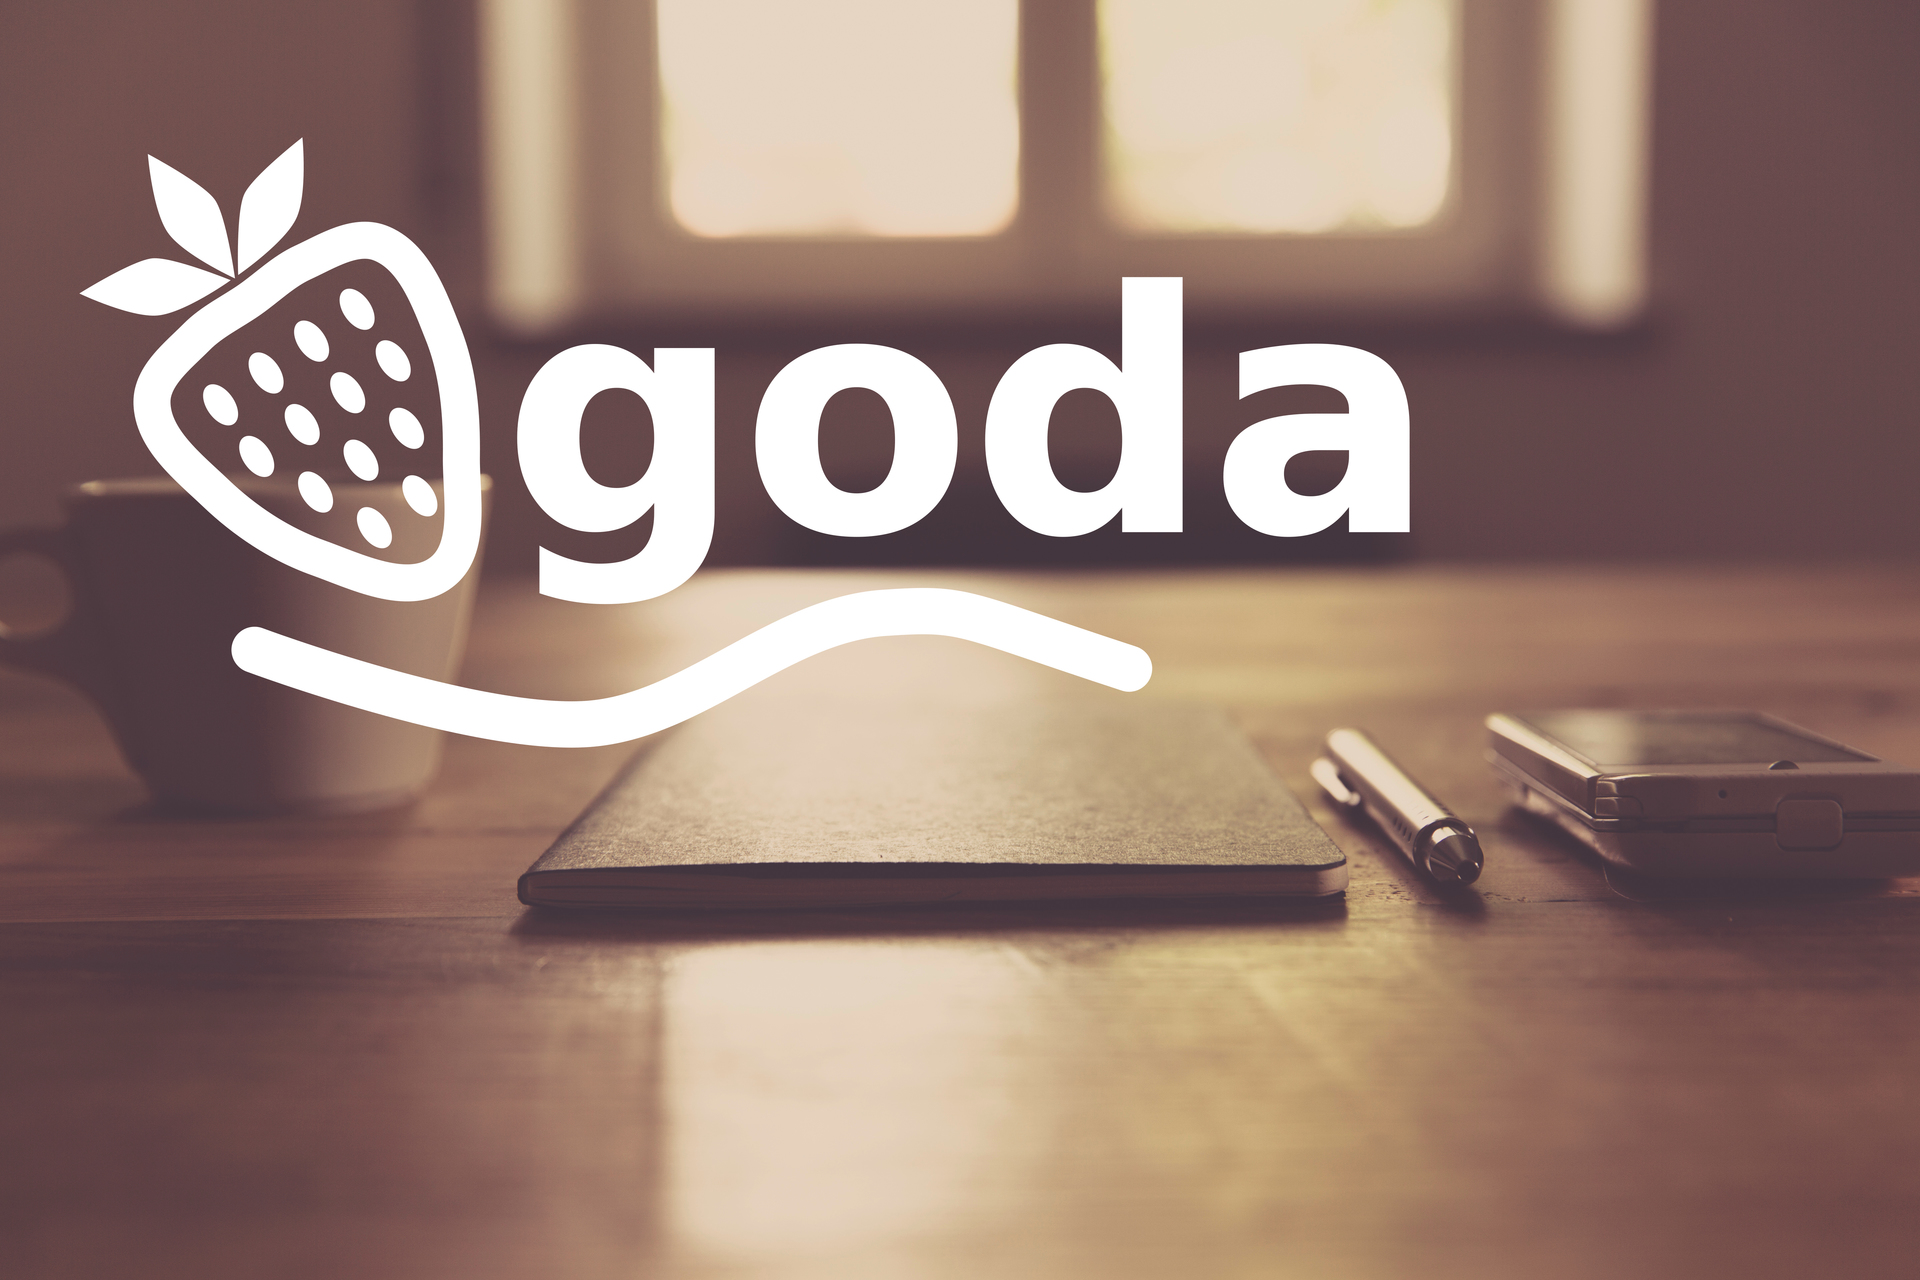 Qgoda-Logo